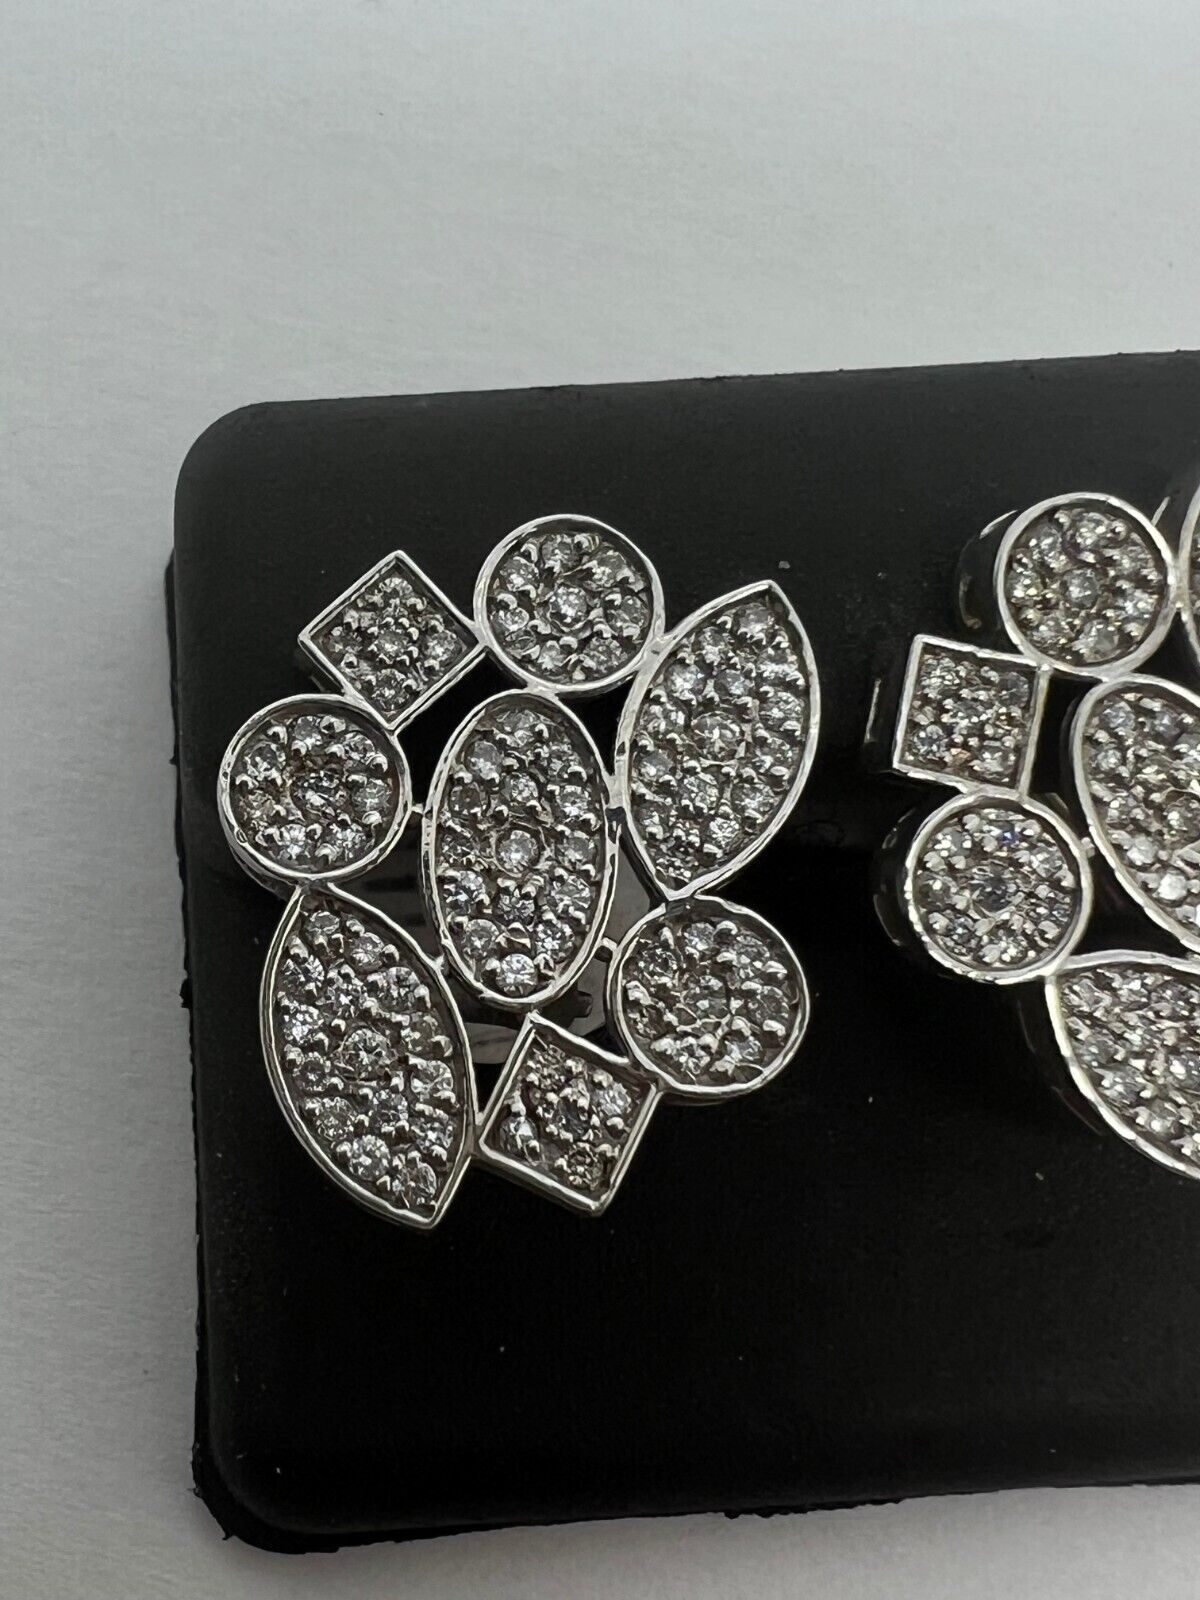 14k White Gold Diamond Pave Leaver Back Flower Earrings